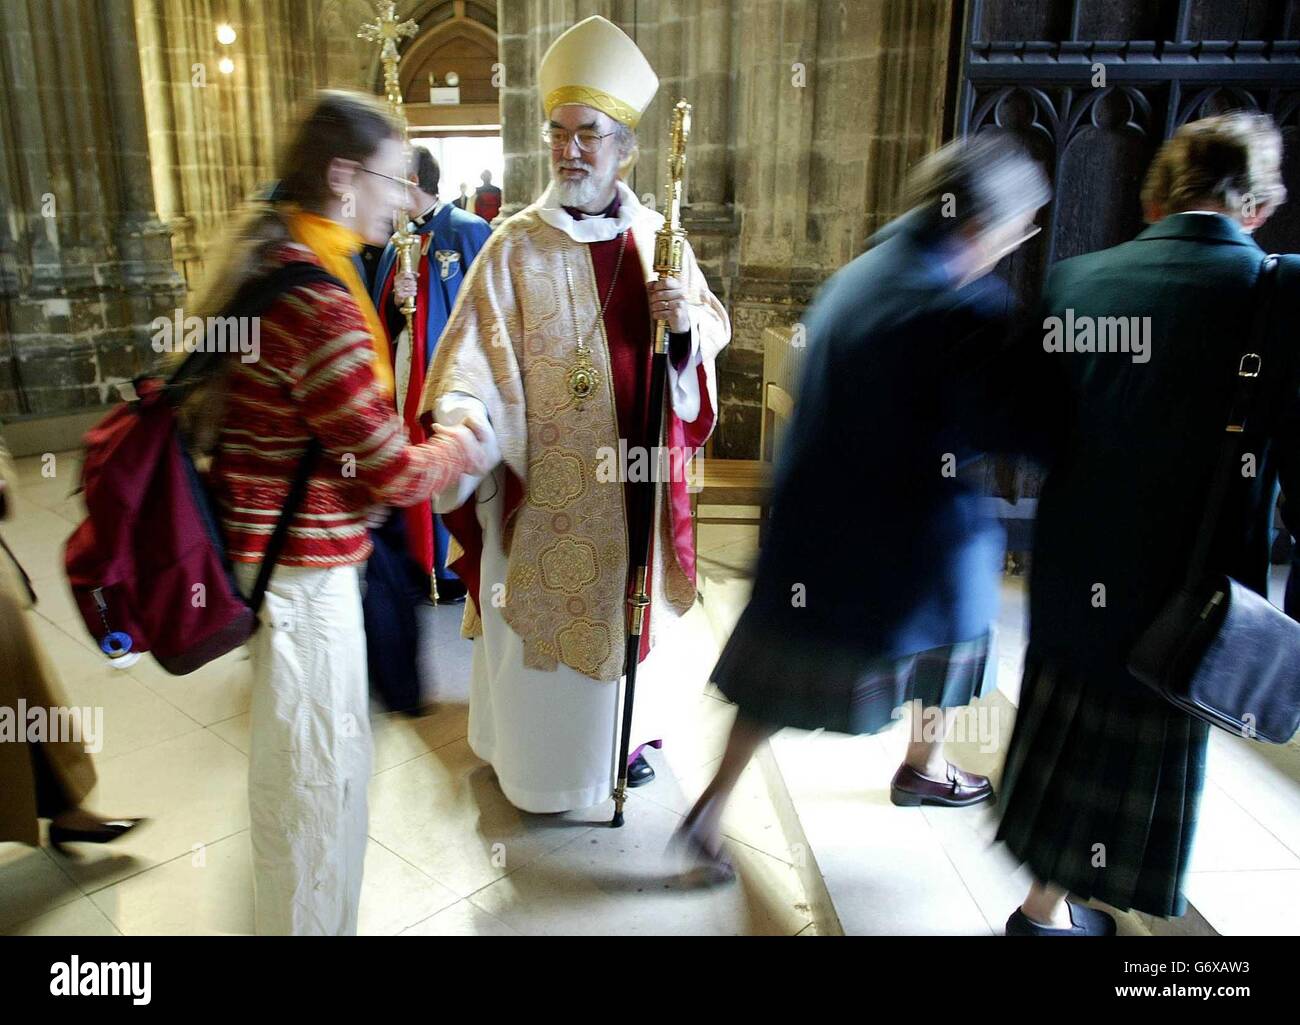 Der Erzbischof von Canterbury, Dr. Rowan Williams, begrüßt seine Gemeinde nach dem Osterfest in der Kathedrale von Canterbury. Stockfoto